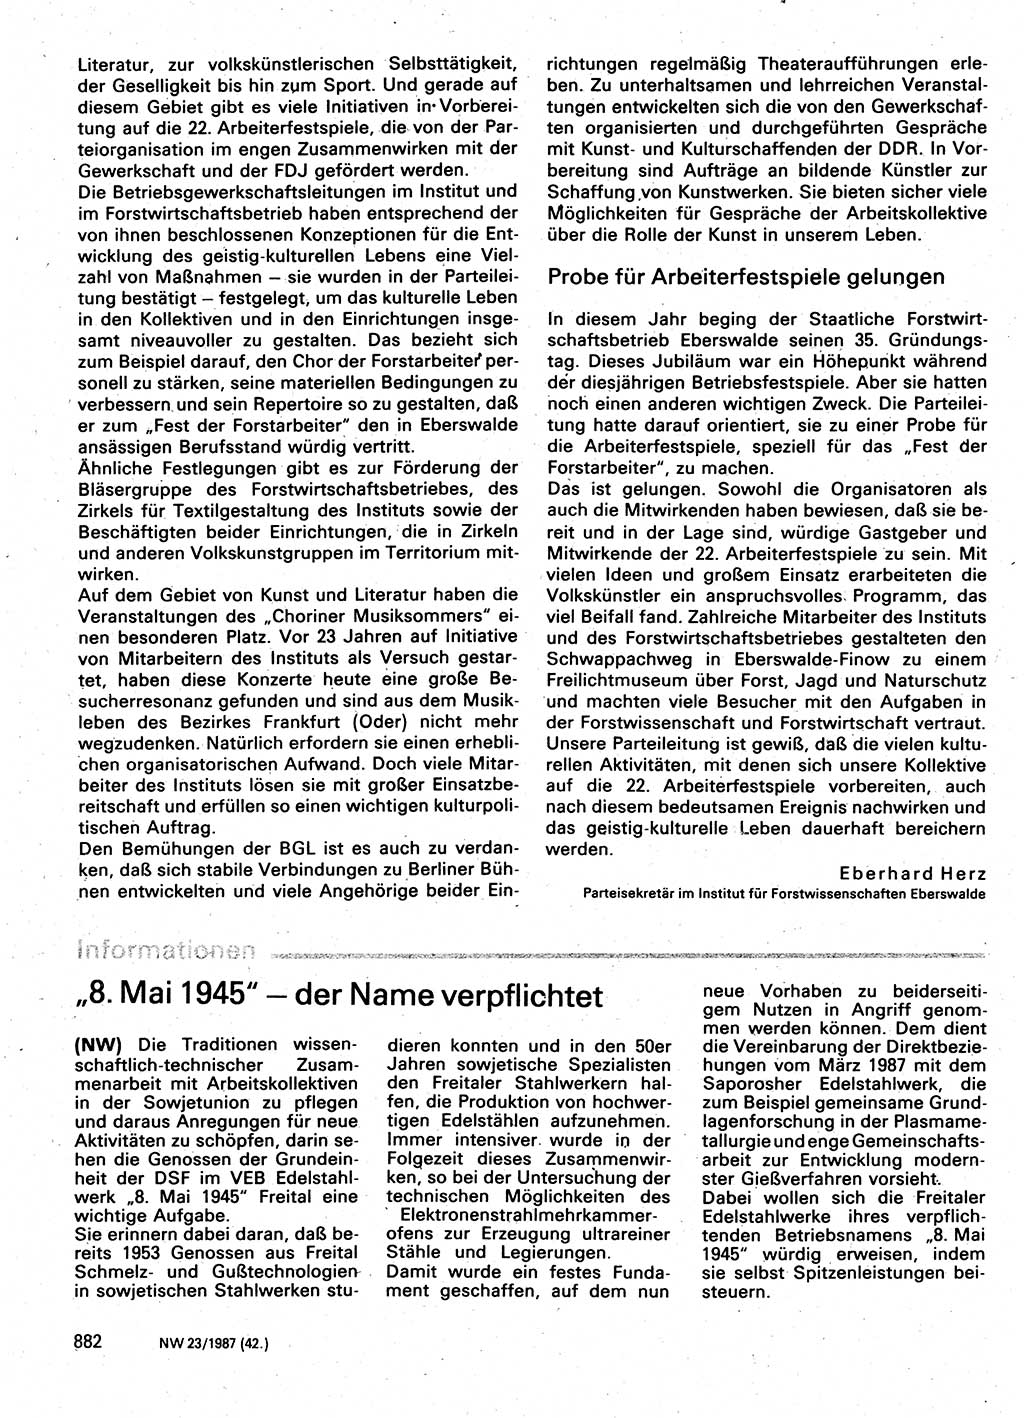 Neuer Weg (NW), Organ des Zentralkomitees (ZK) der SED (Sozialistische Einheitspartei Deutschlands) für Fragen des Parteilebens, 42. Jahrgang [Deutsche Demokratische Republik (DDR)] 1987, Seite 882 (NW ZK SED DDR 1987, S. 882)